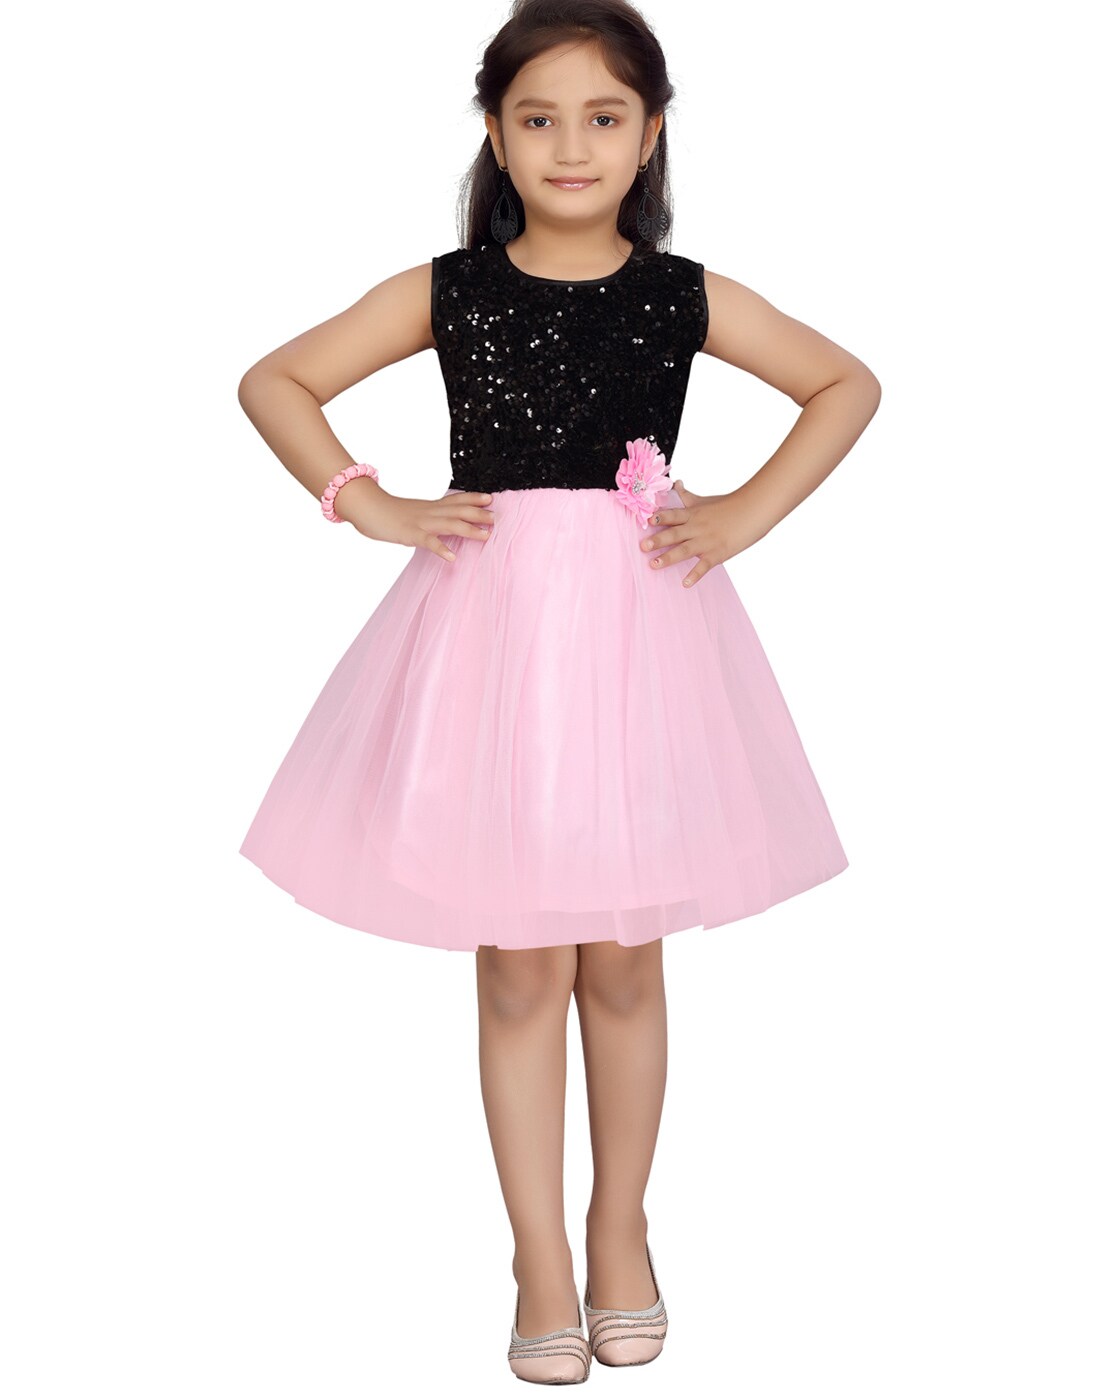 Siillato Bow Mini Dress Black / Pink